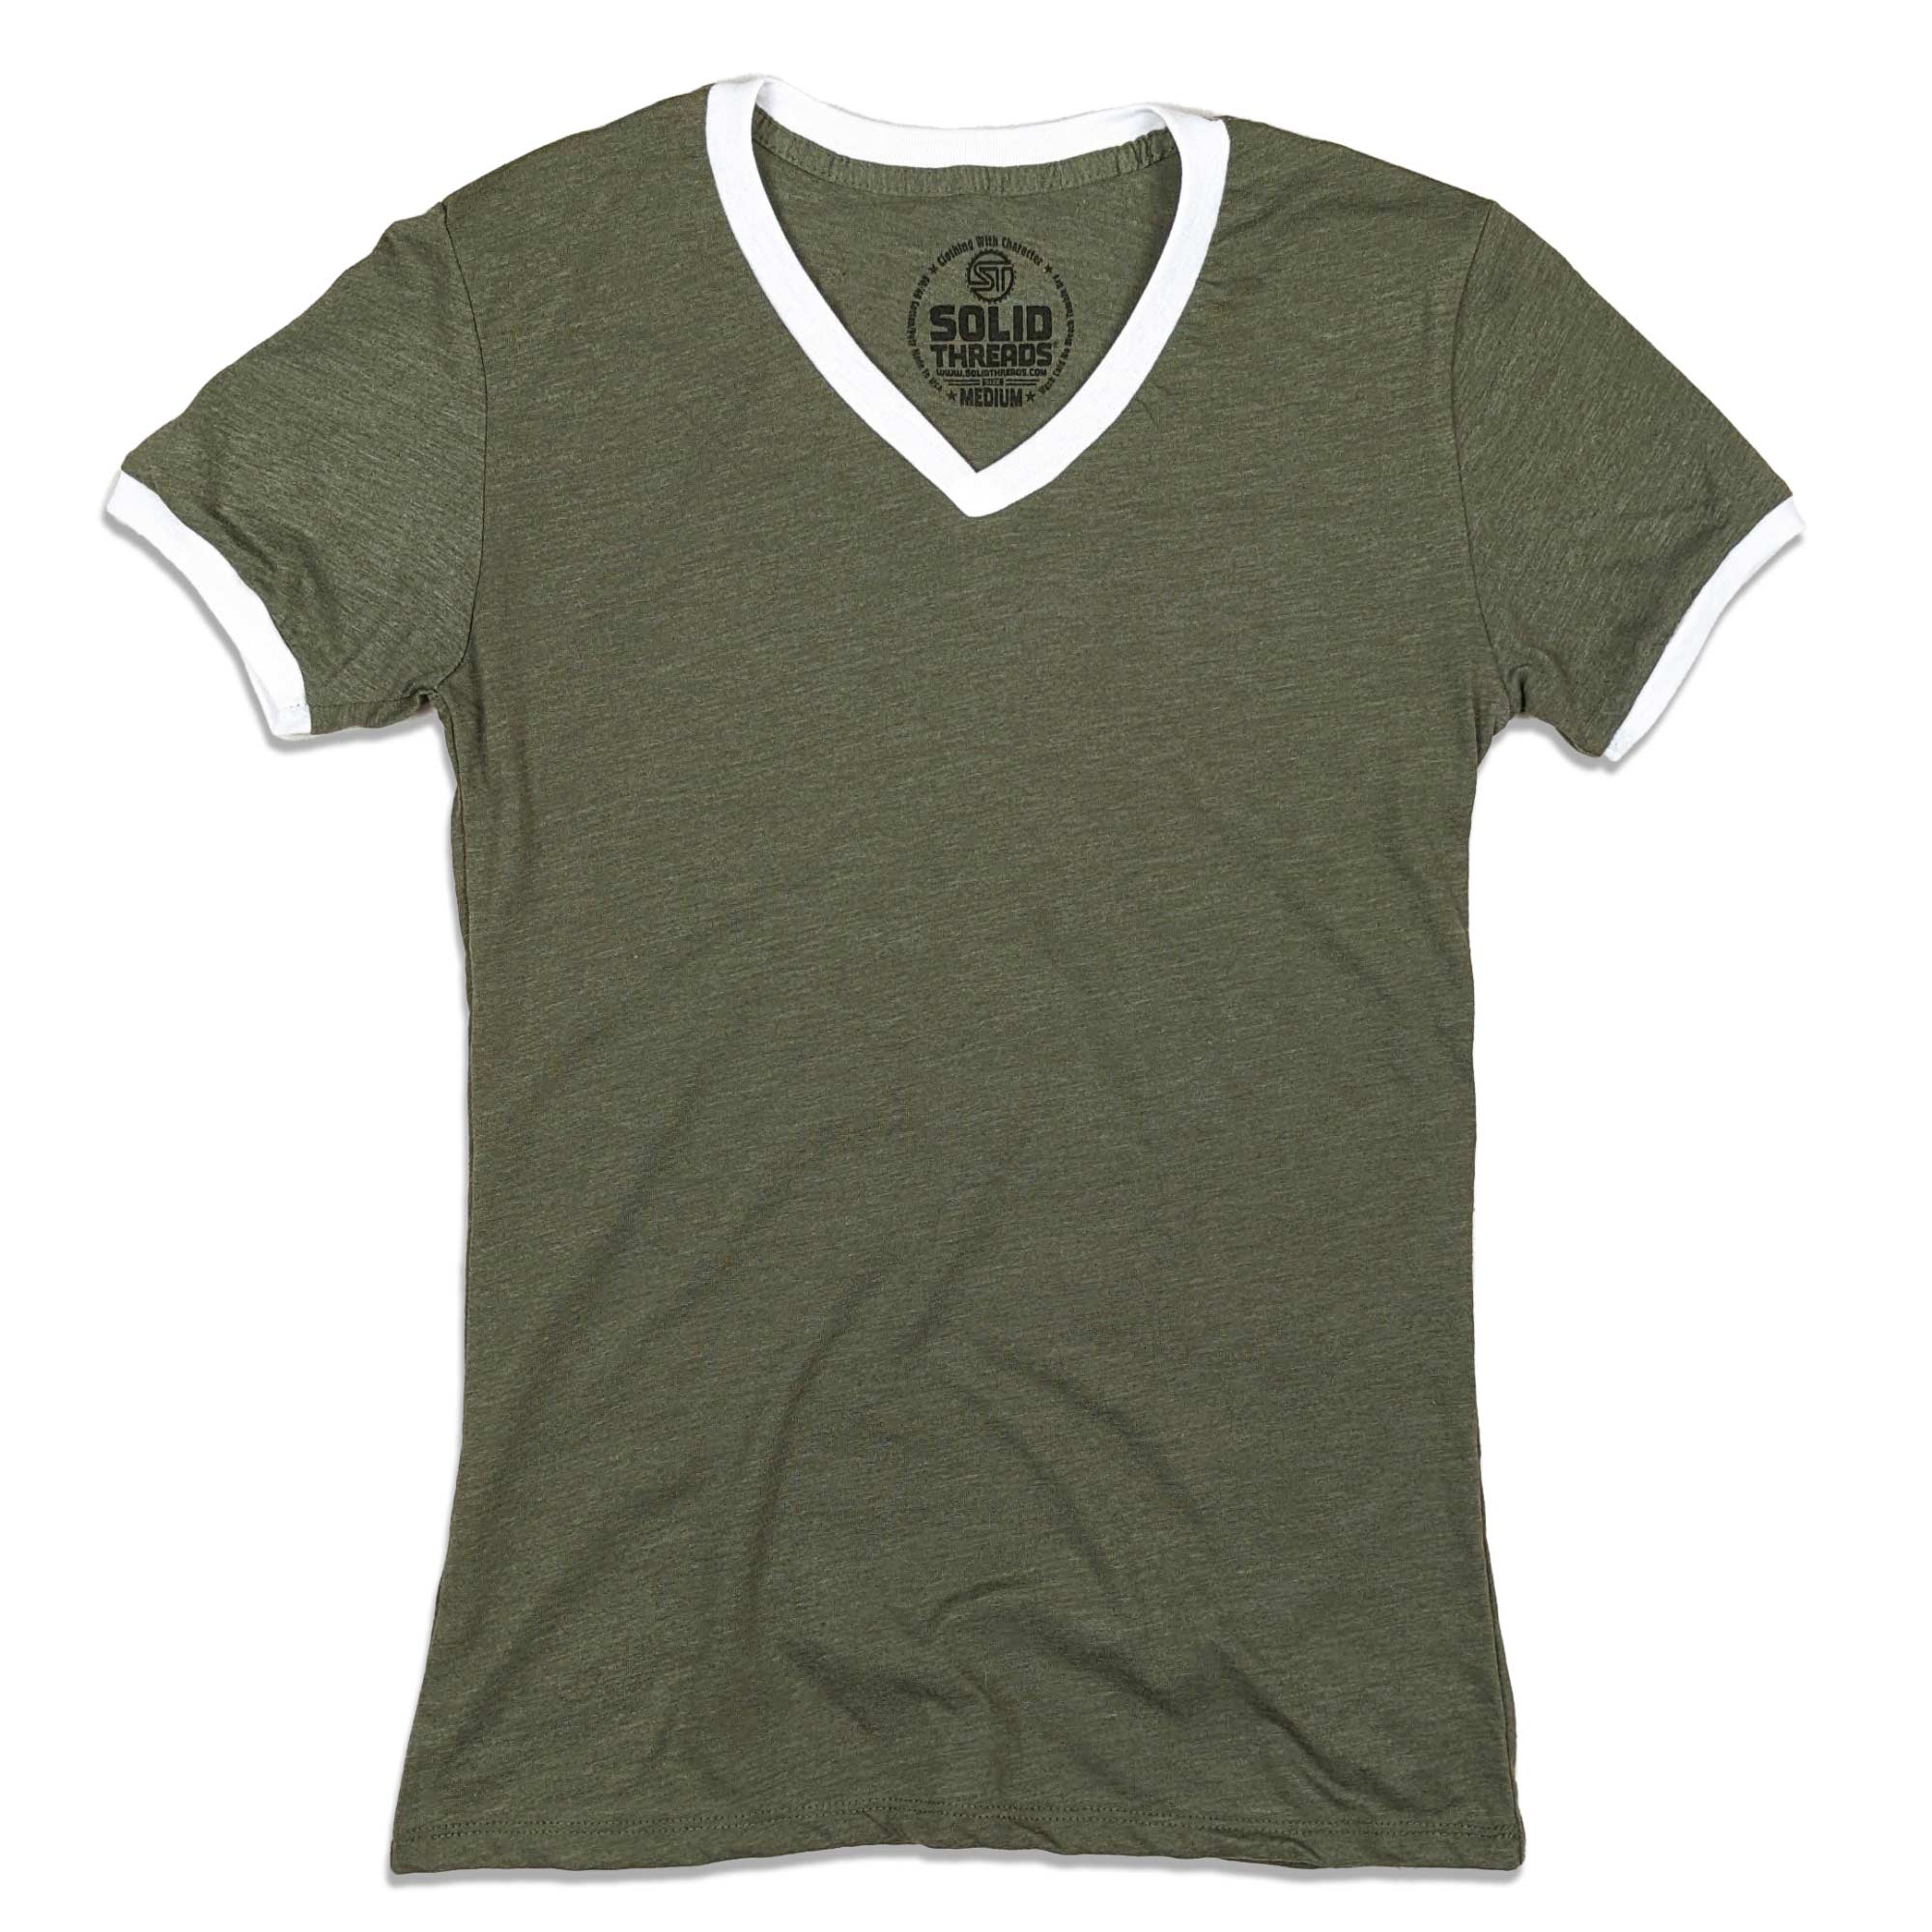 Women's Solid Threads V-Neck Olive/White Retro RInger T-shirt | Vintage Inspired USA Made Tee